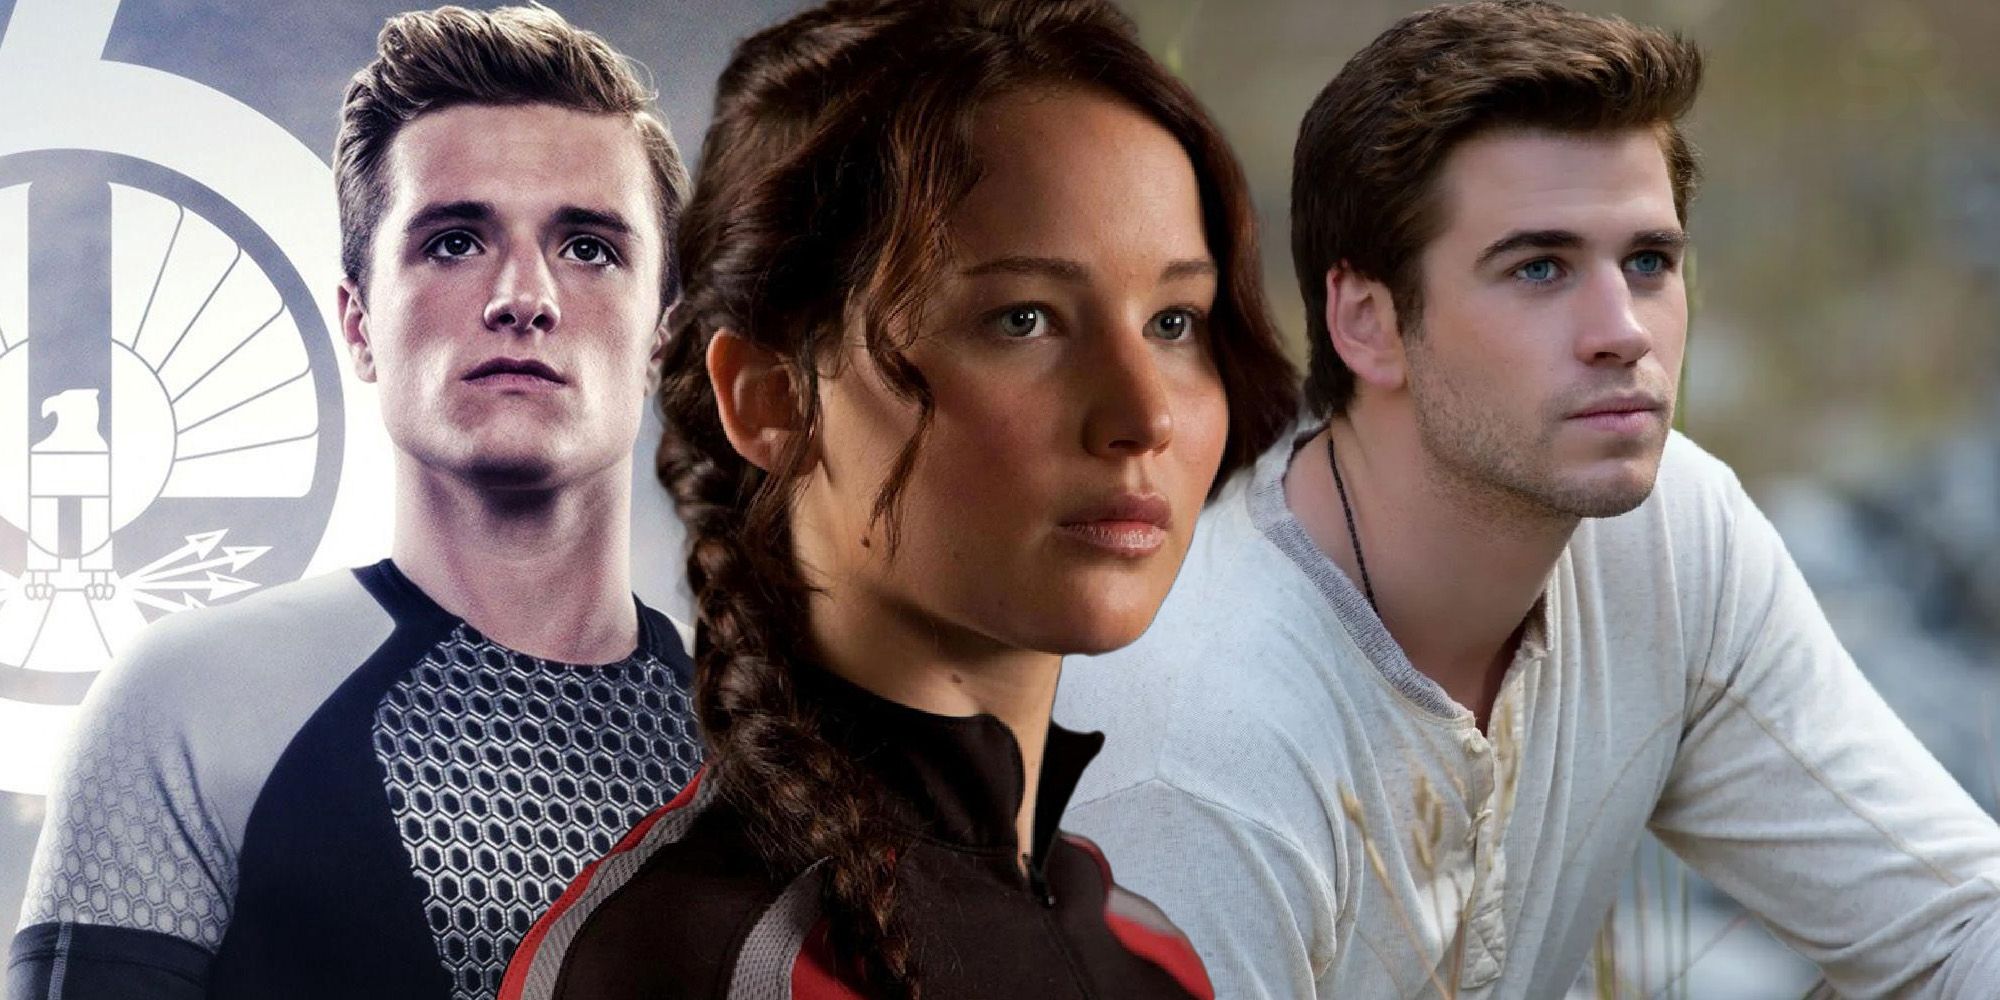 Los juegos del hambre: 10 razones por las que Katniss debería haberse quedado soltera